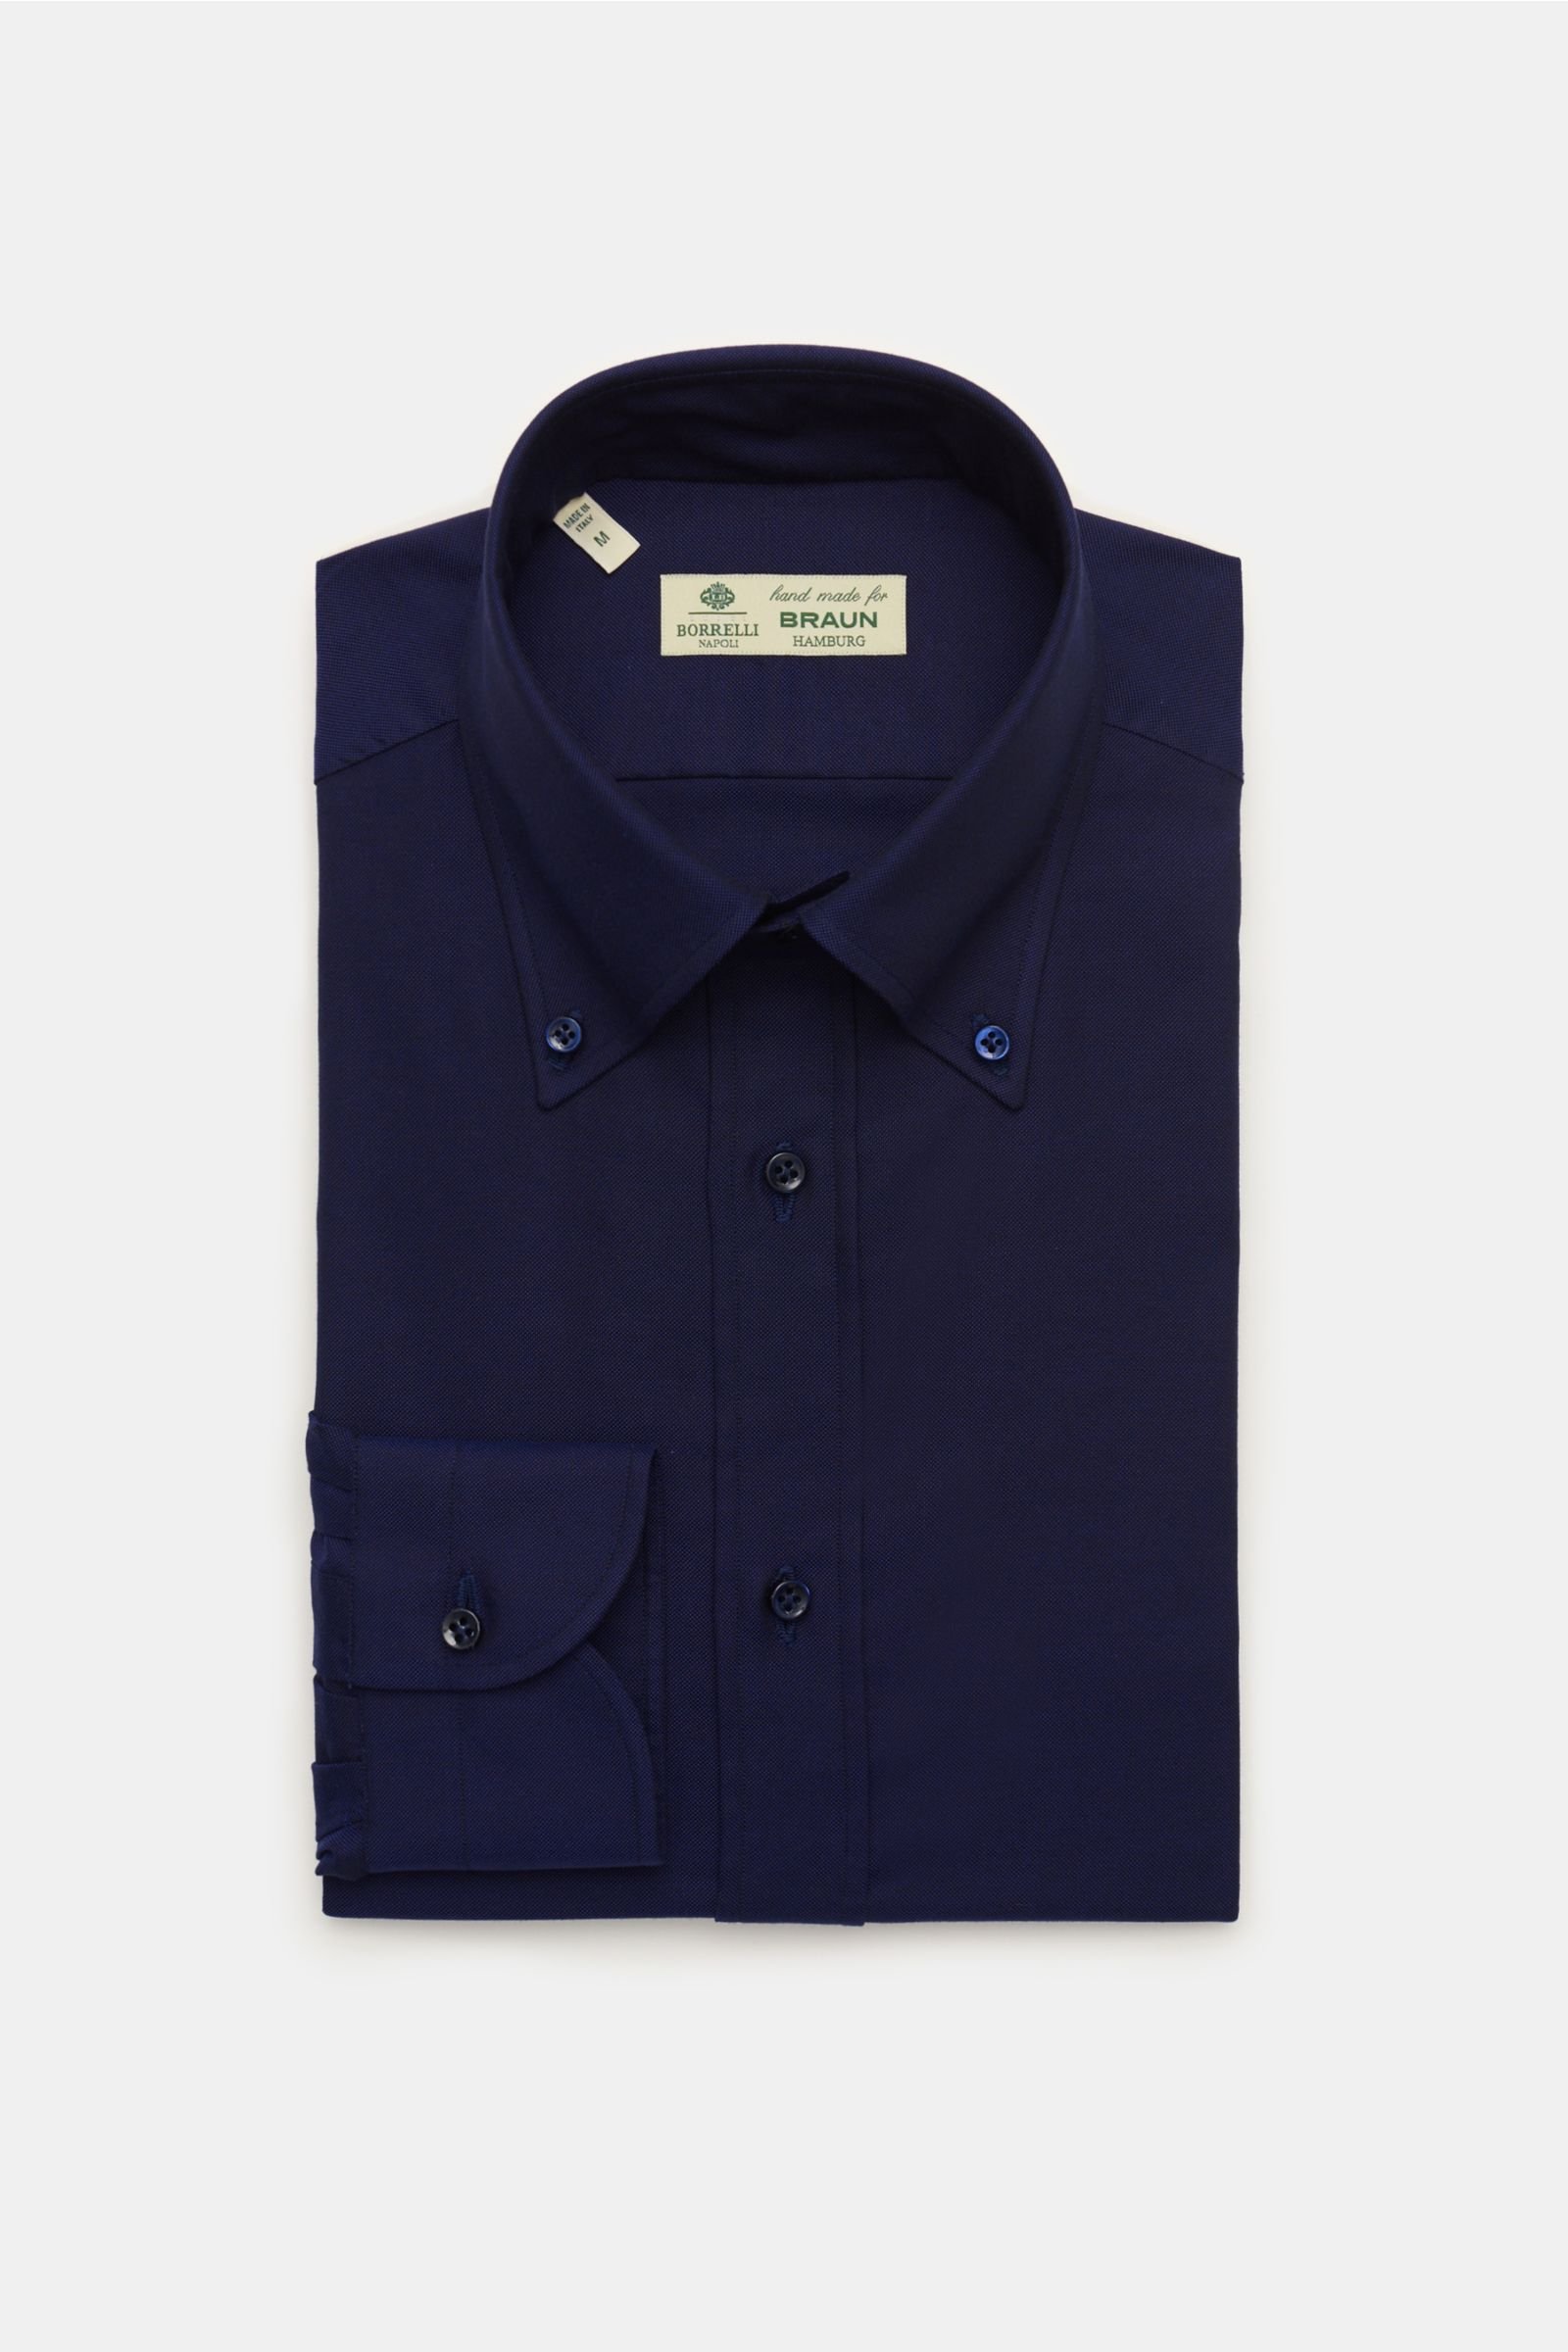 Oxford shirt 'Gable' button-down collar navy